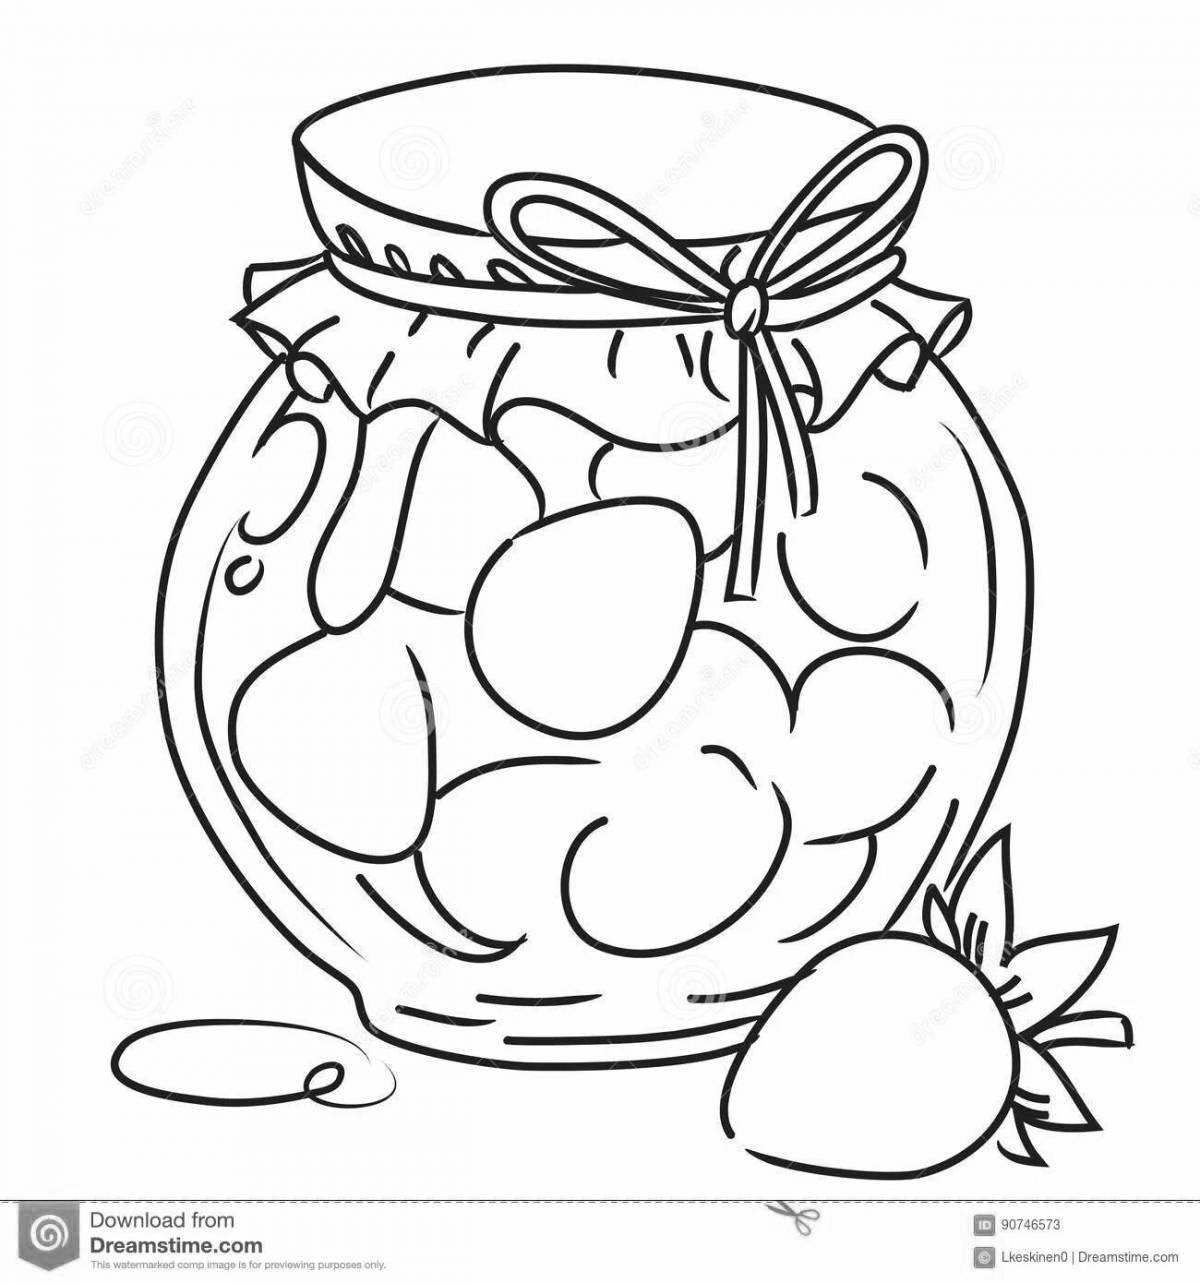 Magic jam jar coloring page